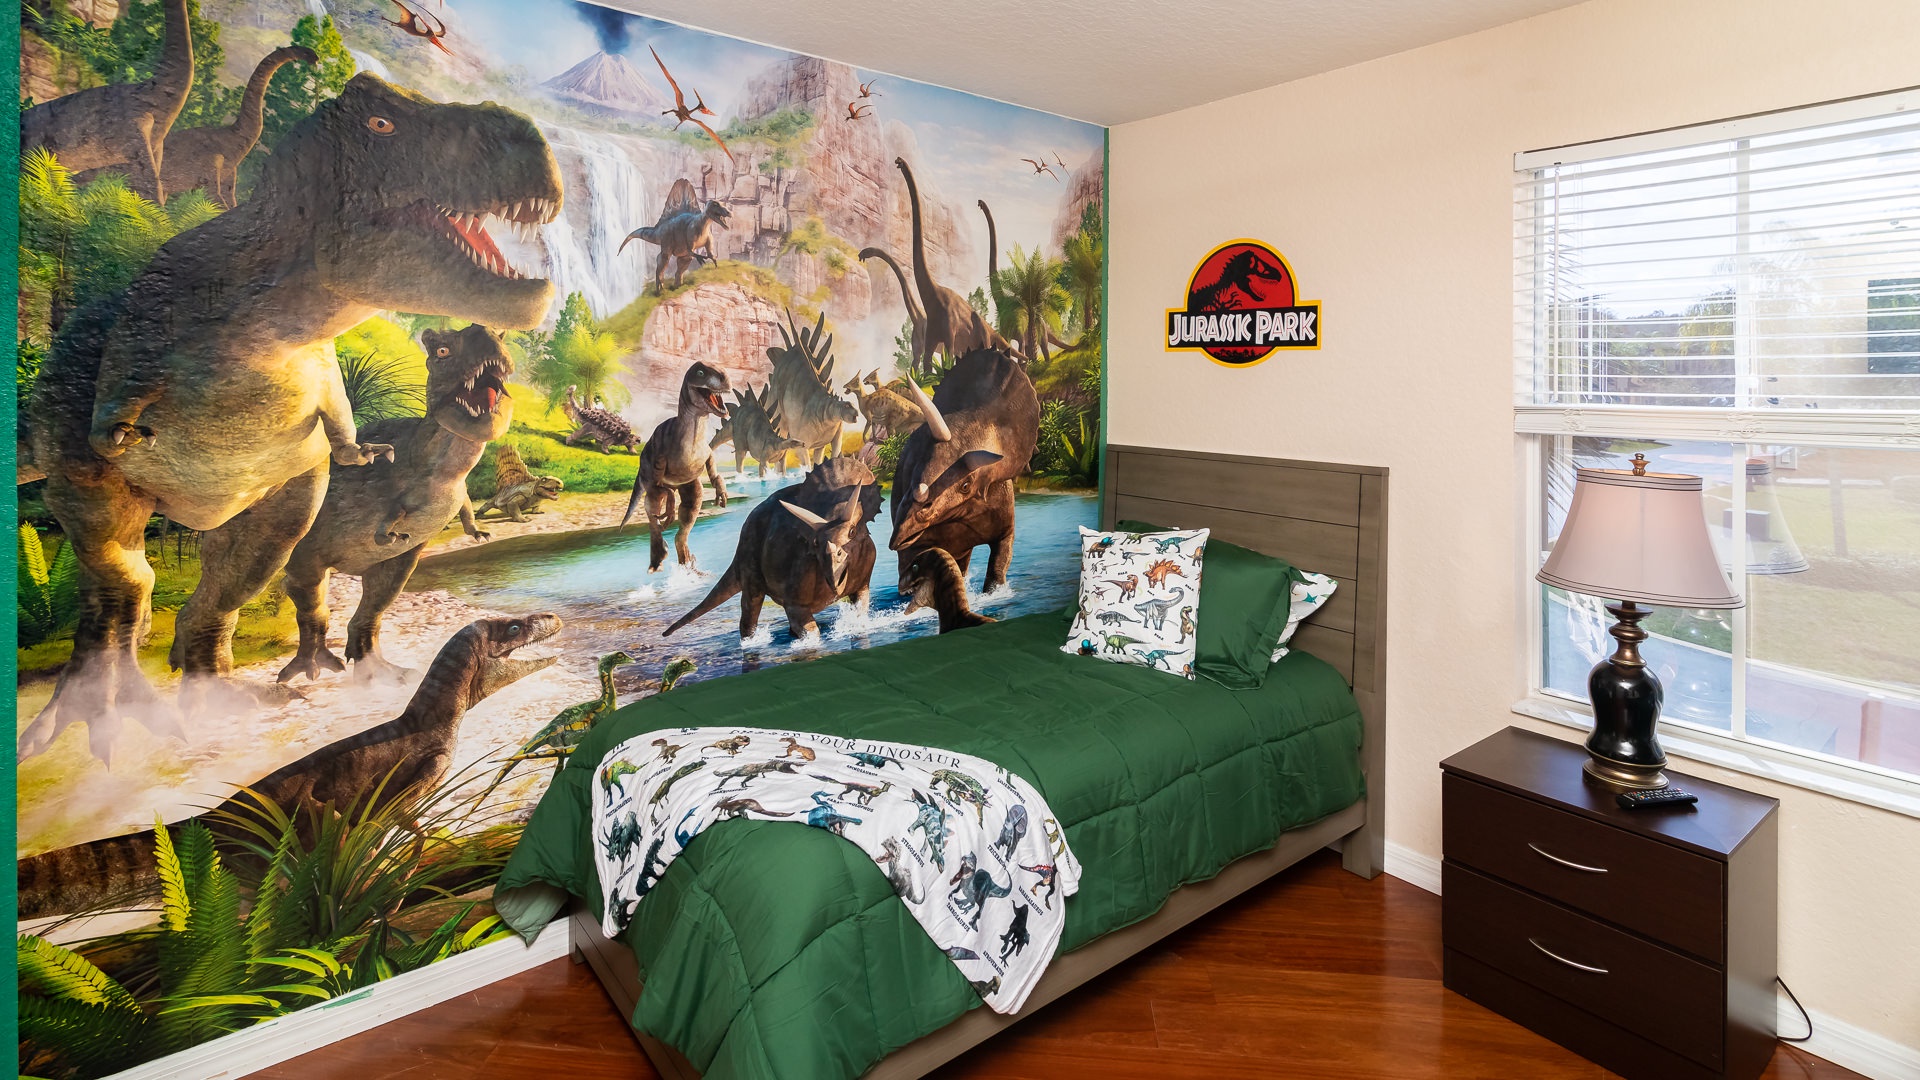 The boys will love their dinosaur themed room!